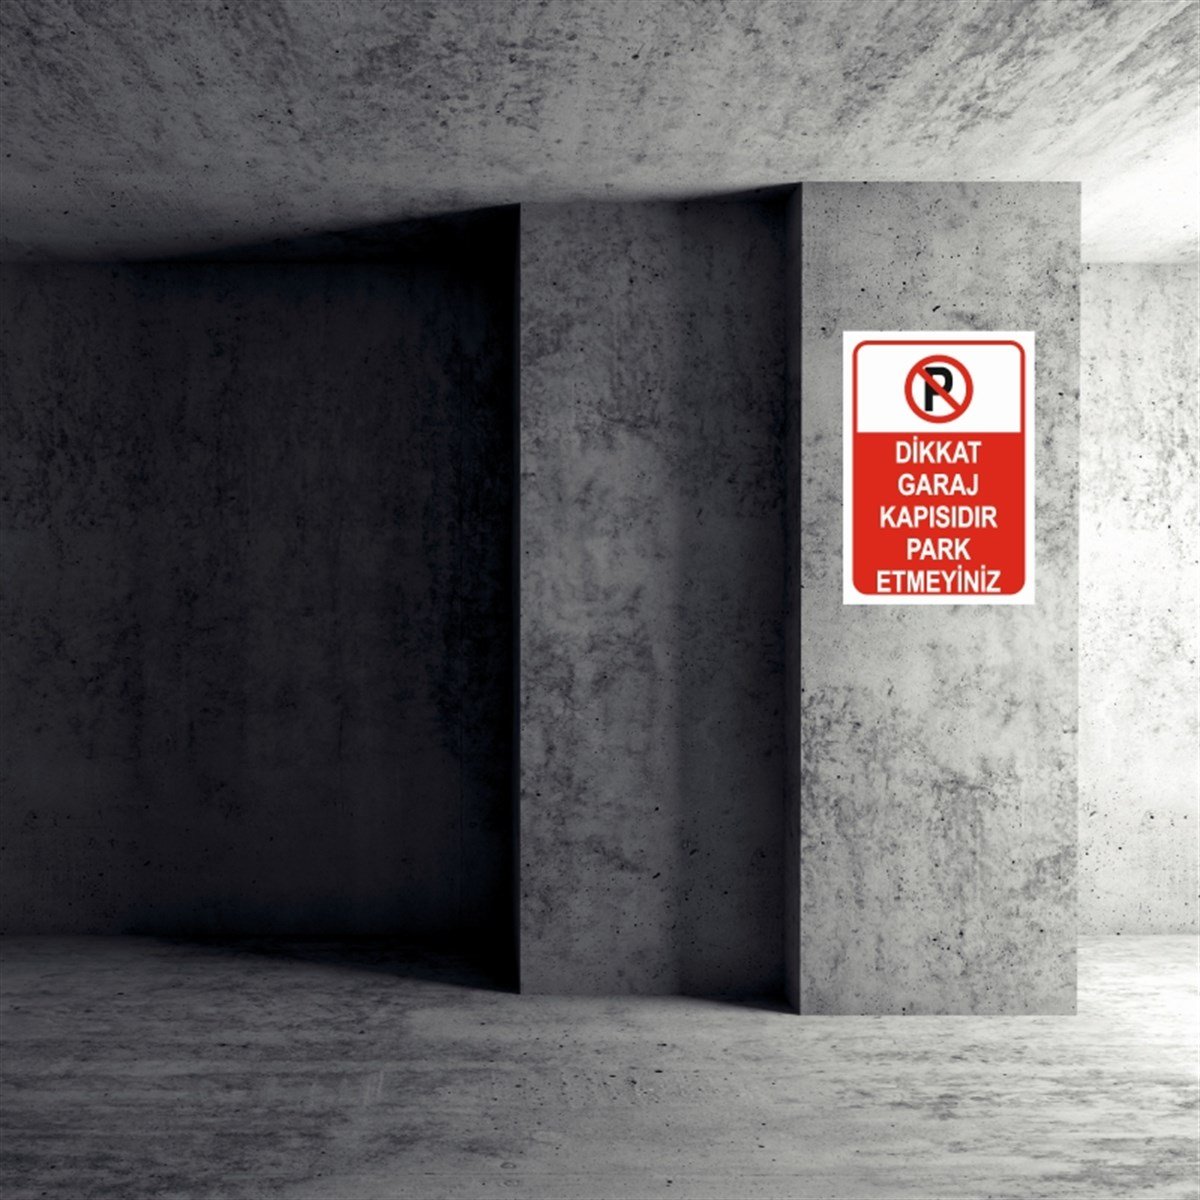 Dikkat Garaj Kapısıdır Park Etmeyiniz İş Güvenliği Uyarı Levhası